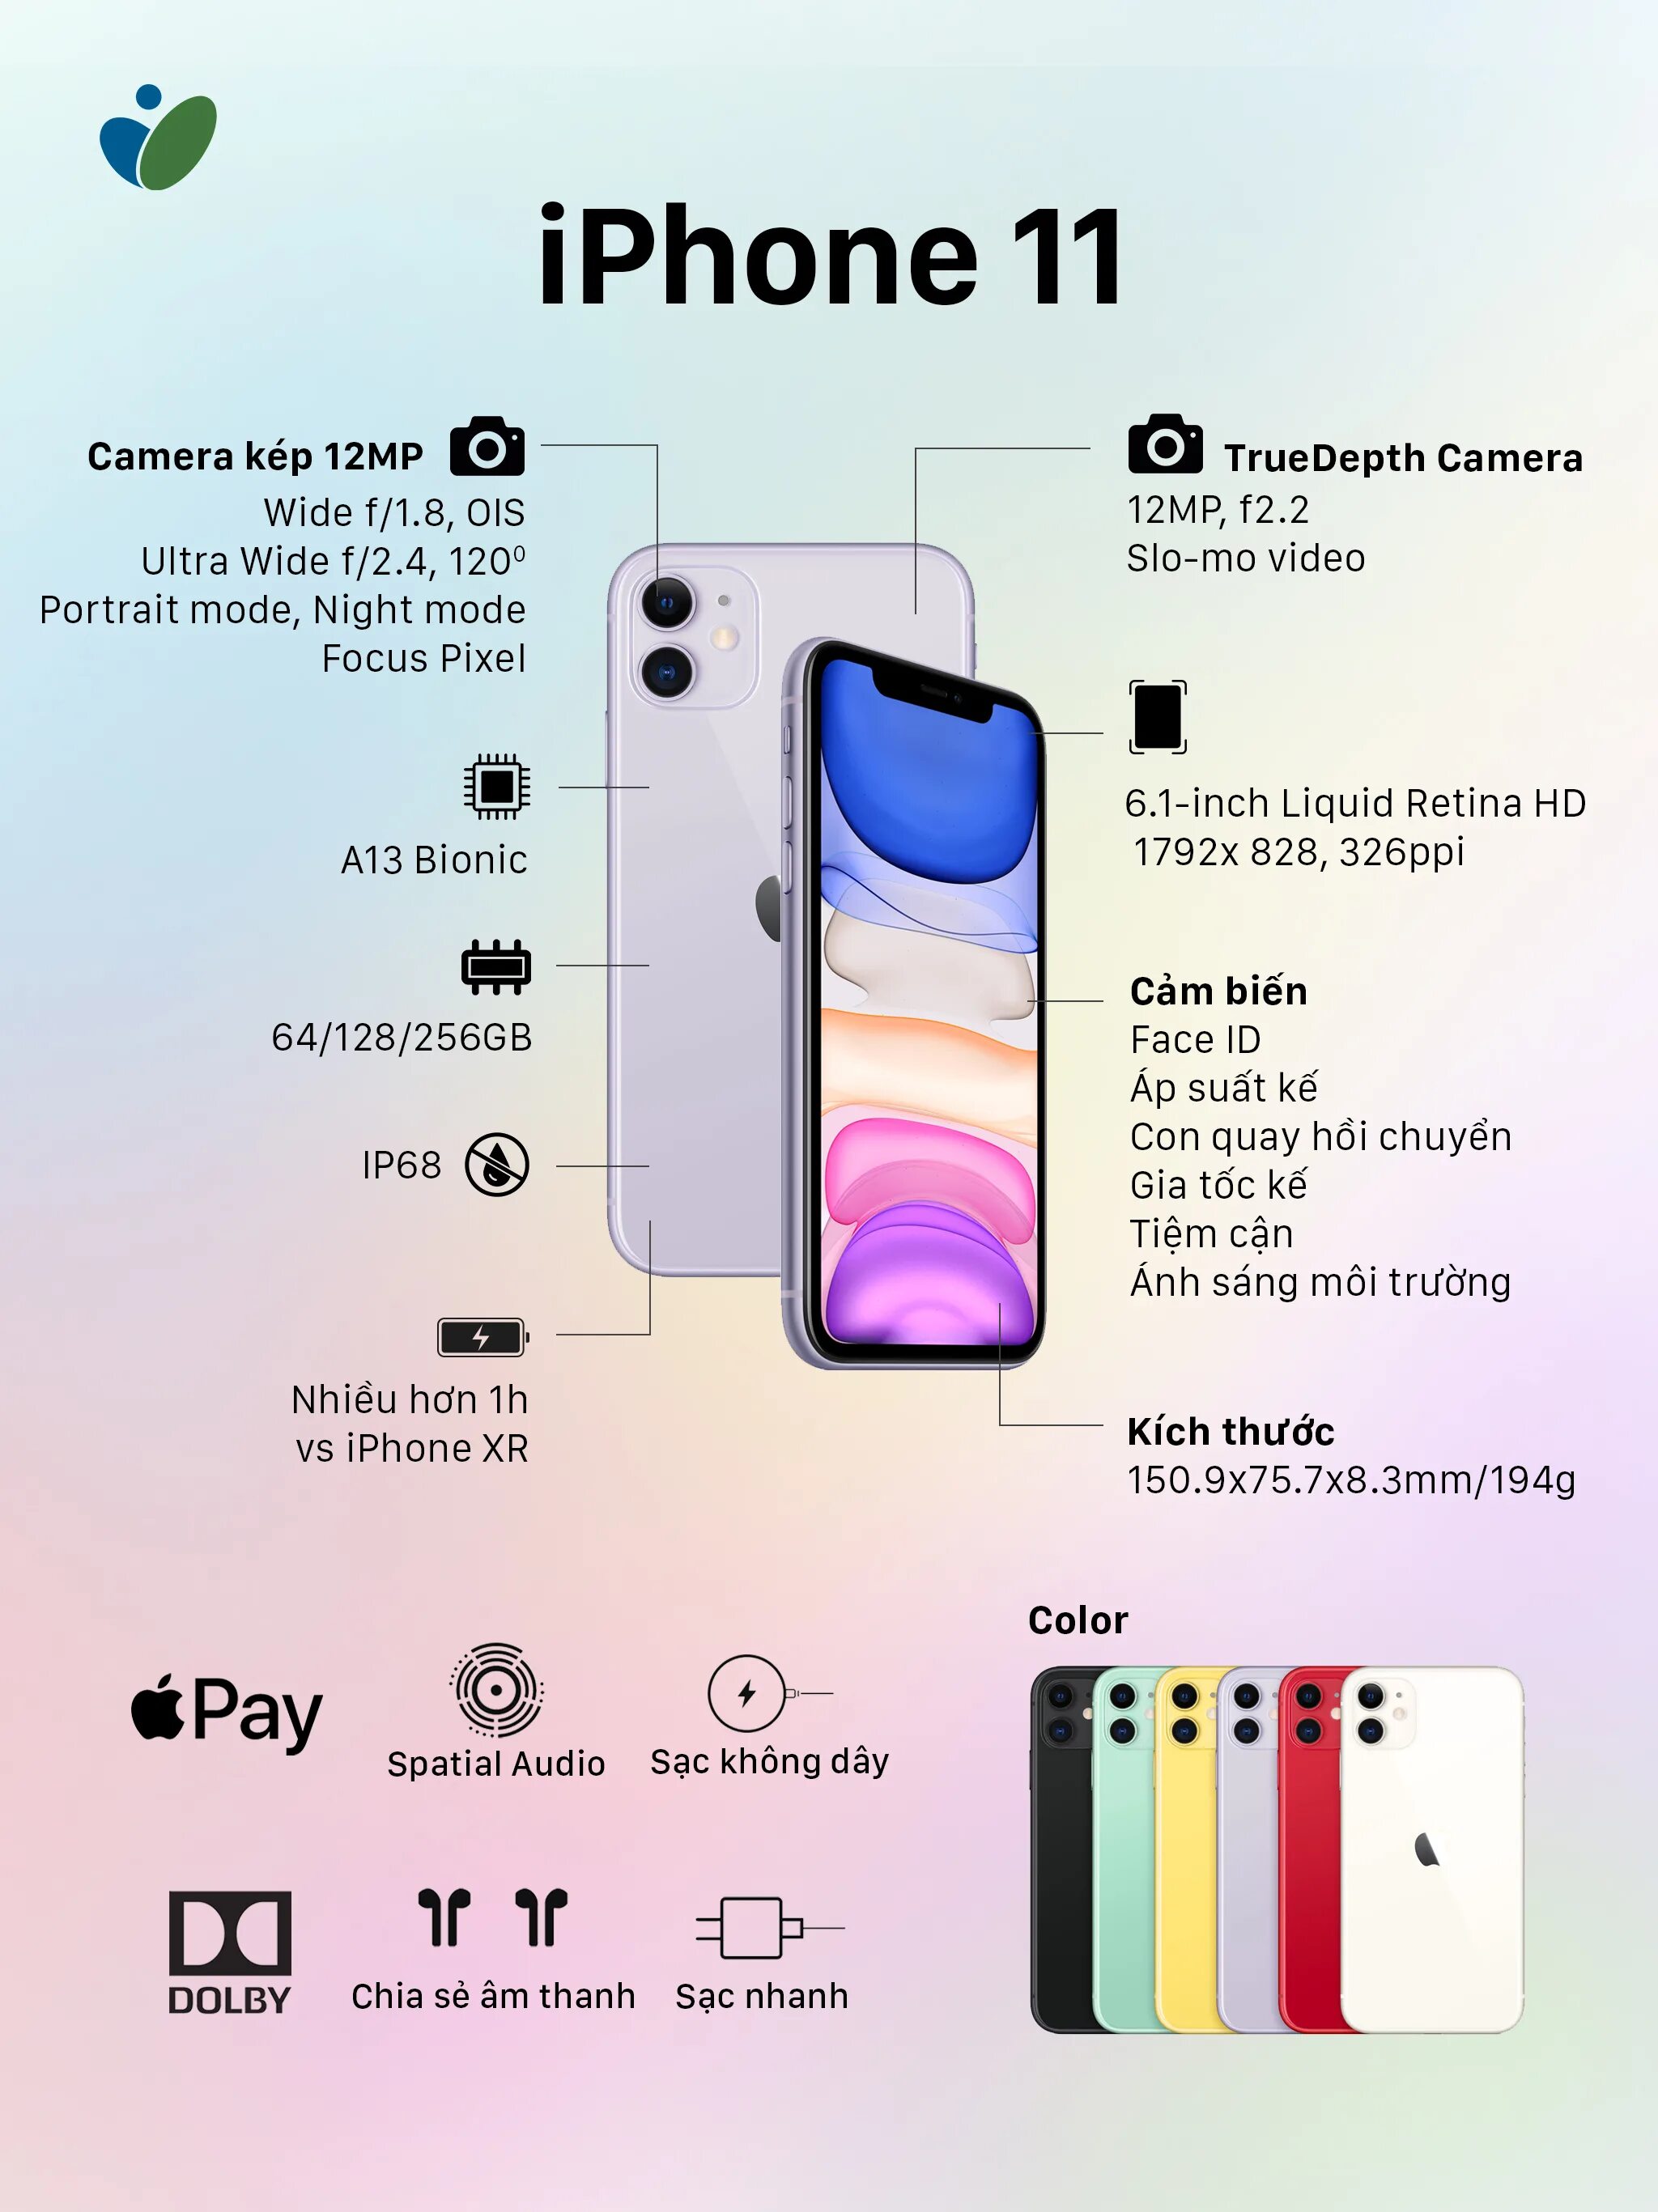 12 про сколько камер. Айфон 11 Pro Max камера мегапикселей. Айфон 11 про Макс камера МП. Iphone 11 камера мегапикселей. Айфон 11 характеристики камеры.